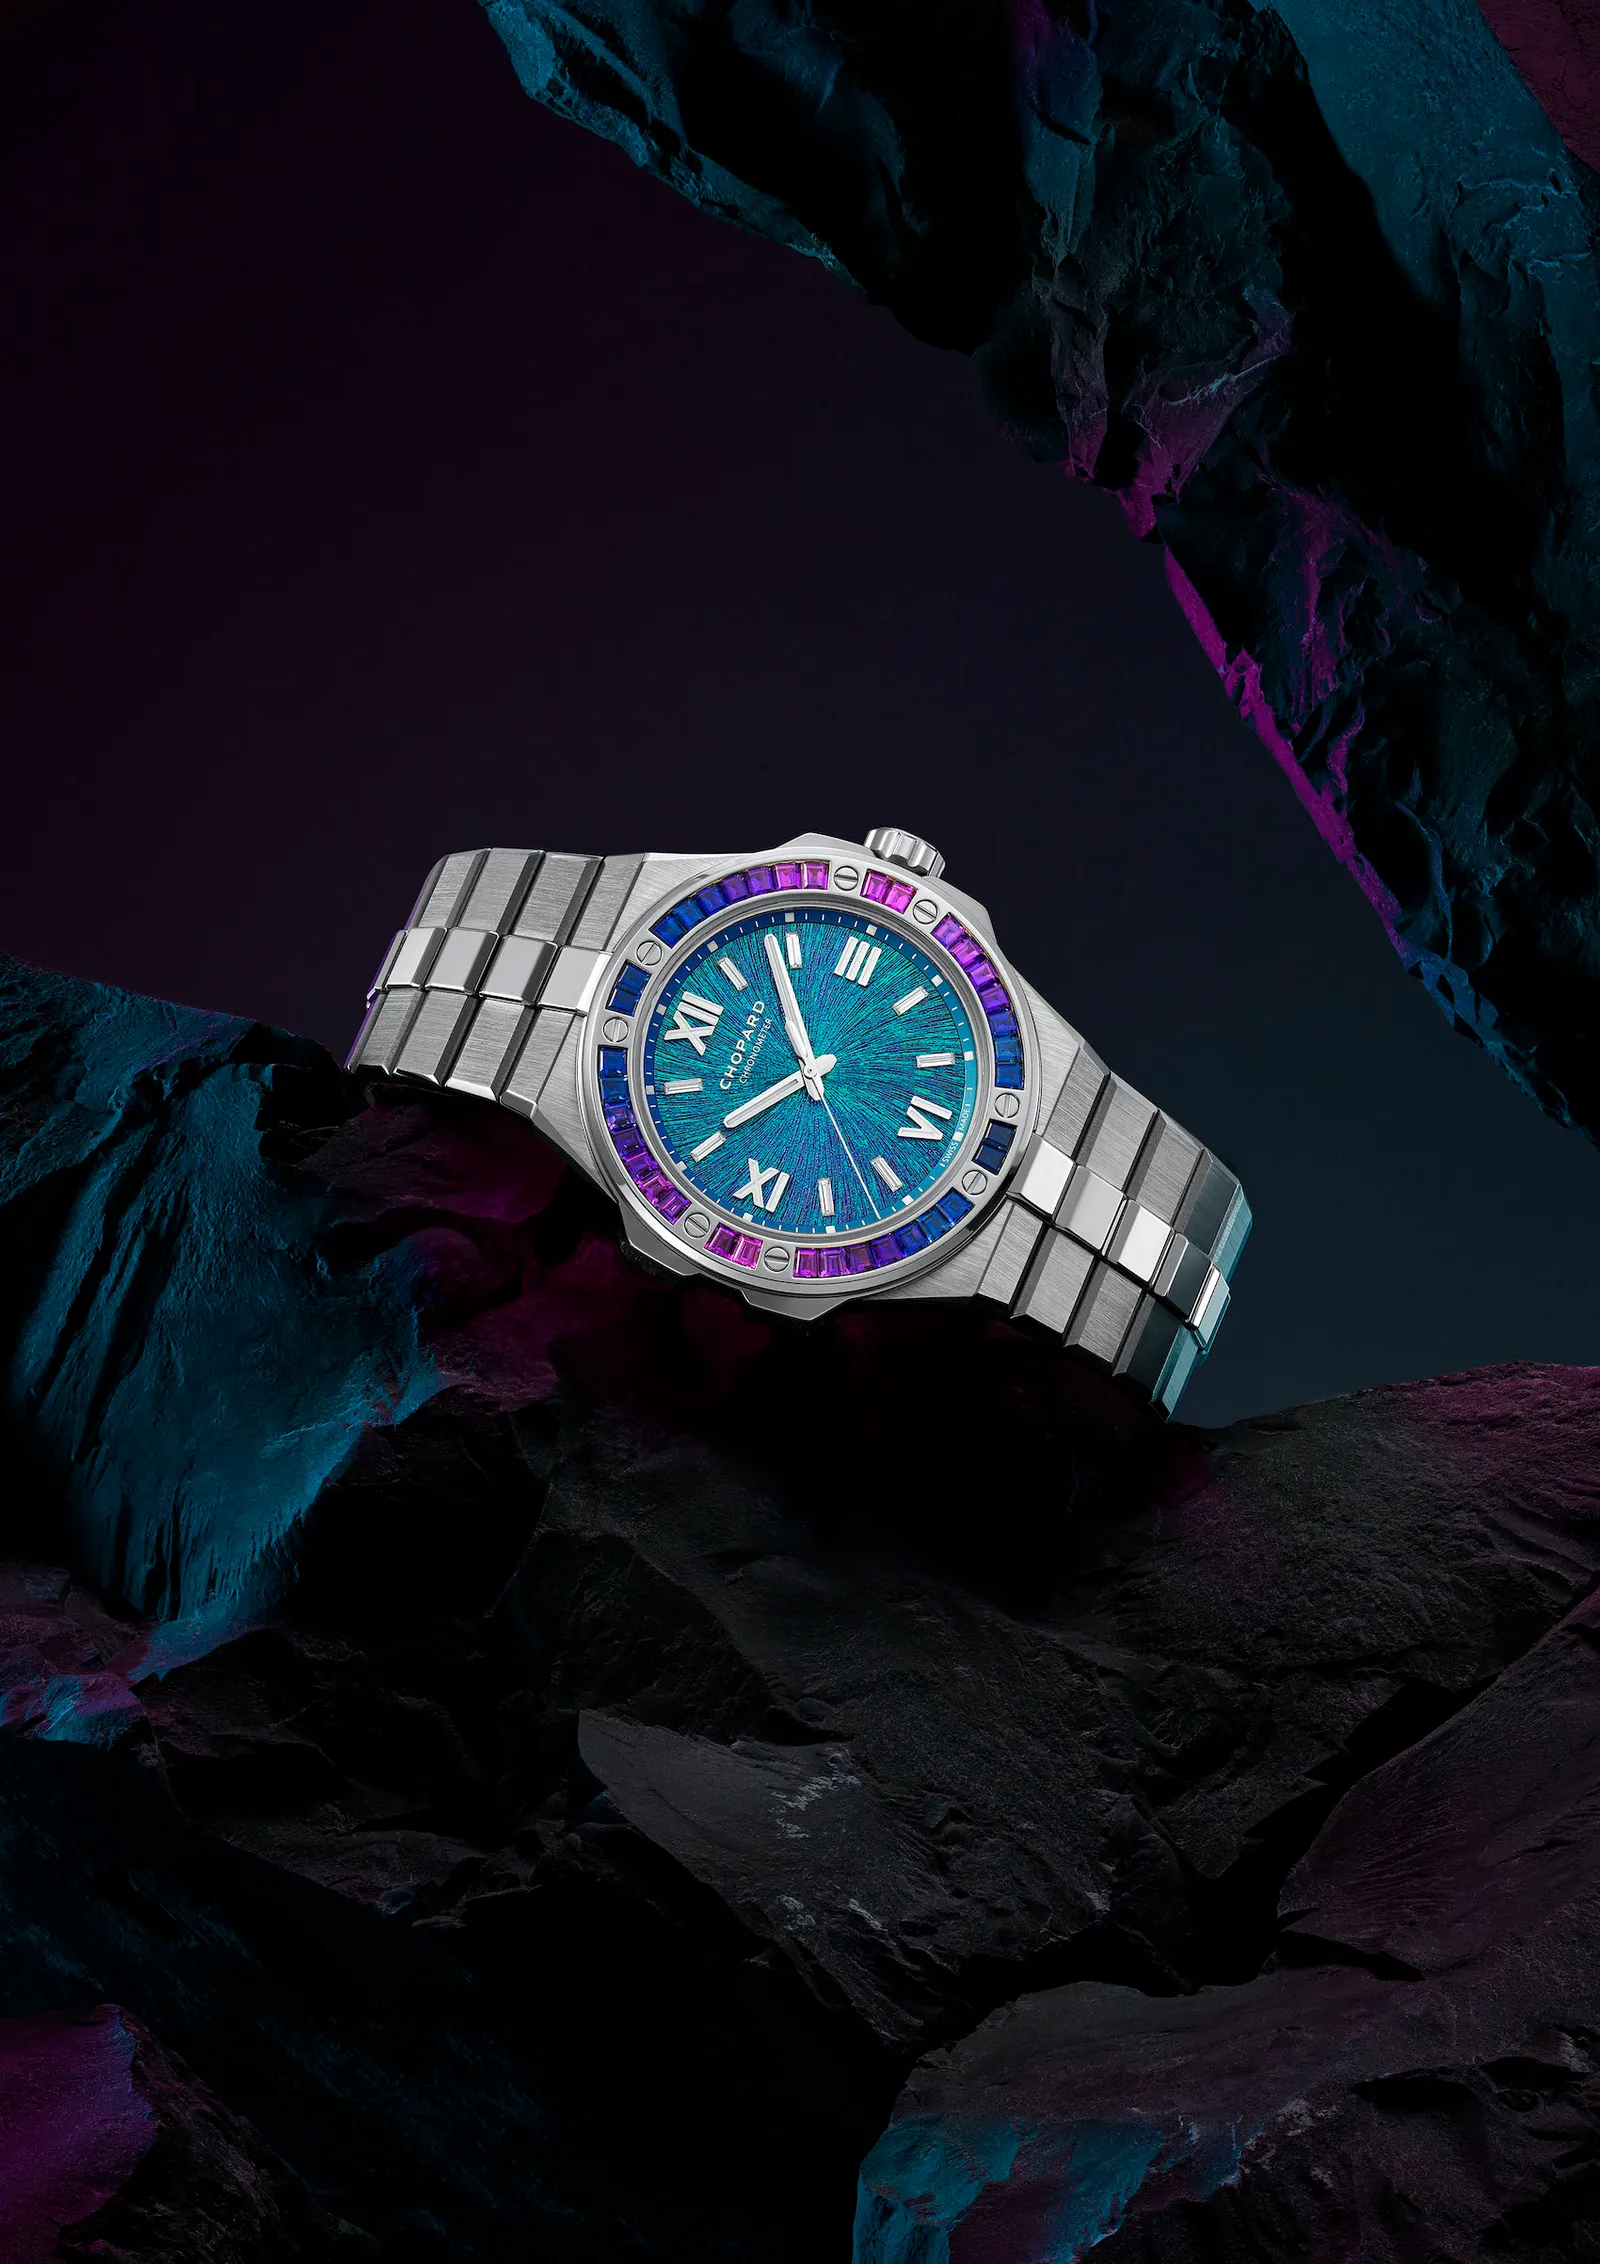 ساعت شوپارد آلپاین ایگل با صفحه آبی و بزل رنگارنگ روی زمینه تیره